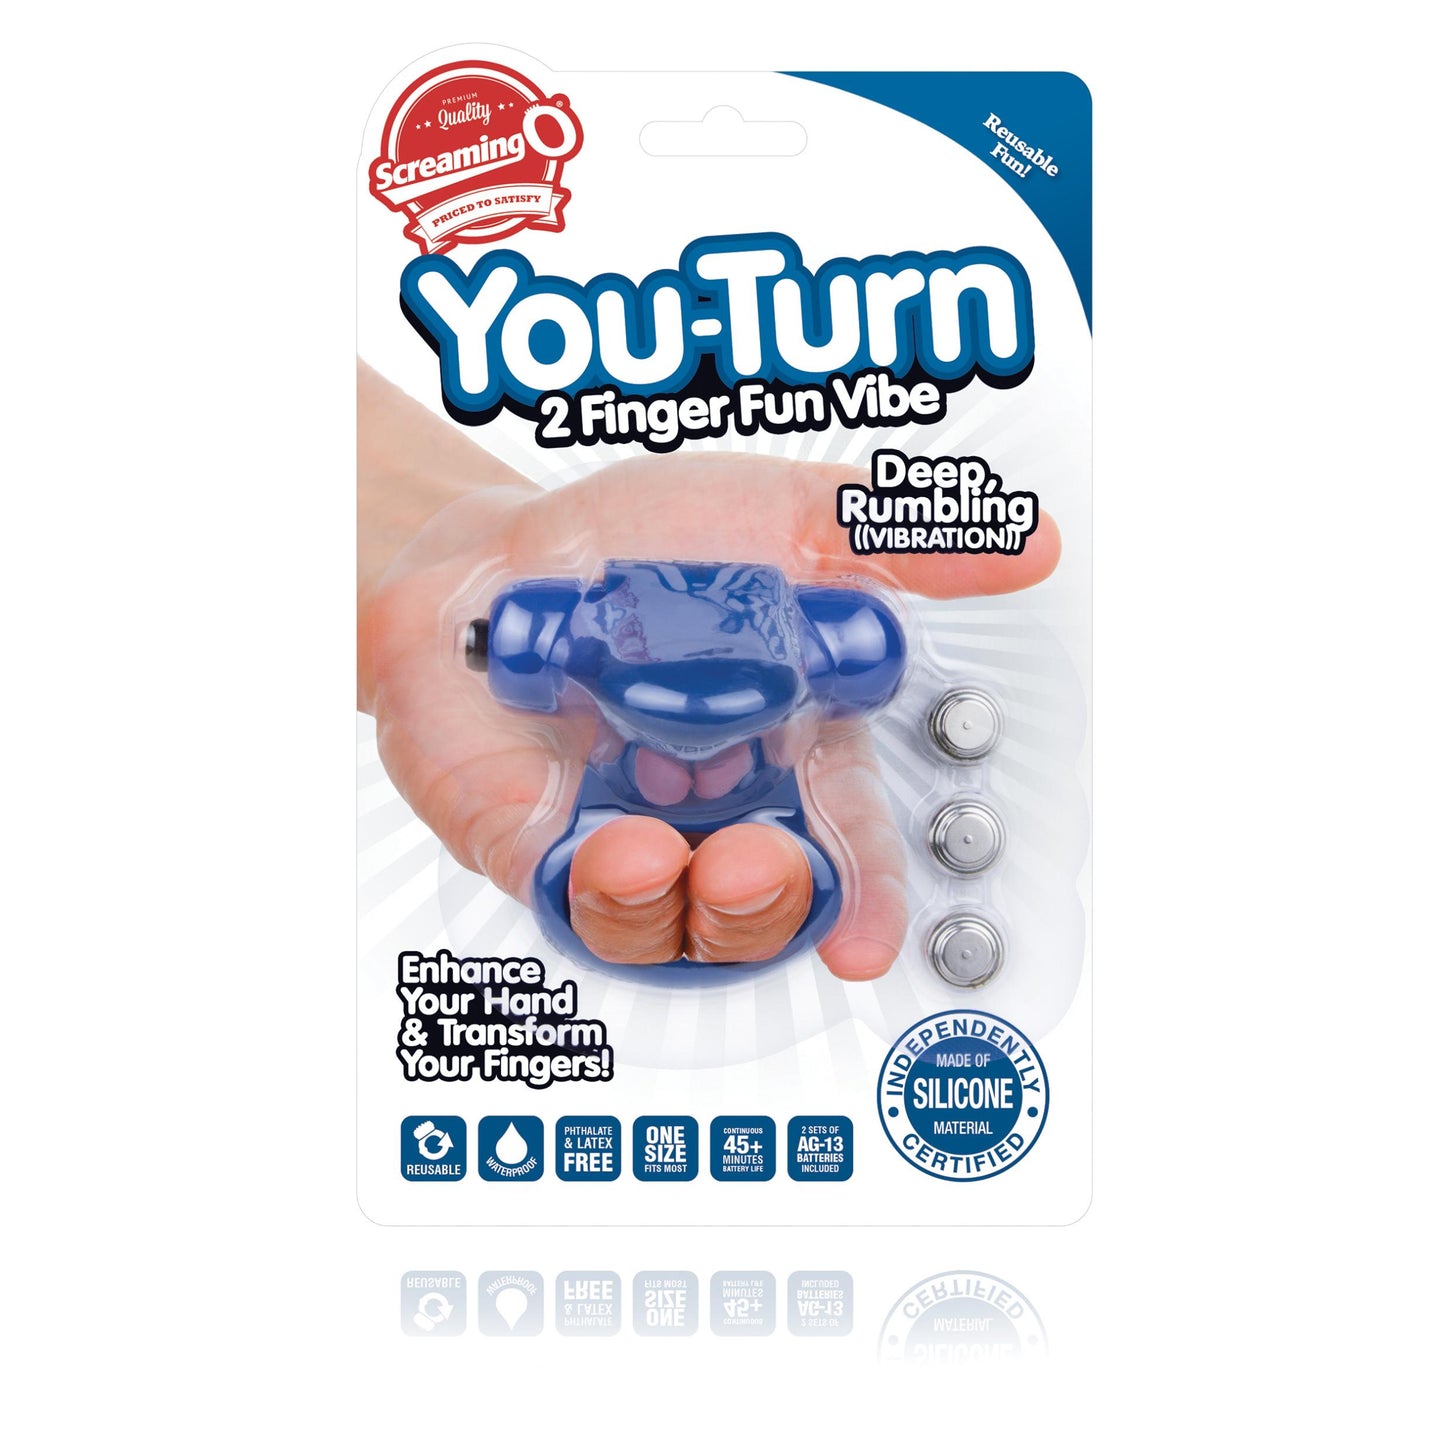 You-Turn 2 Finger Fun Vibe